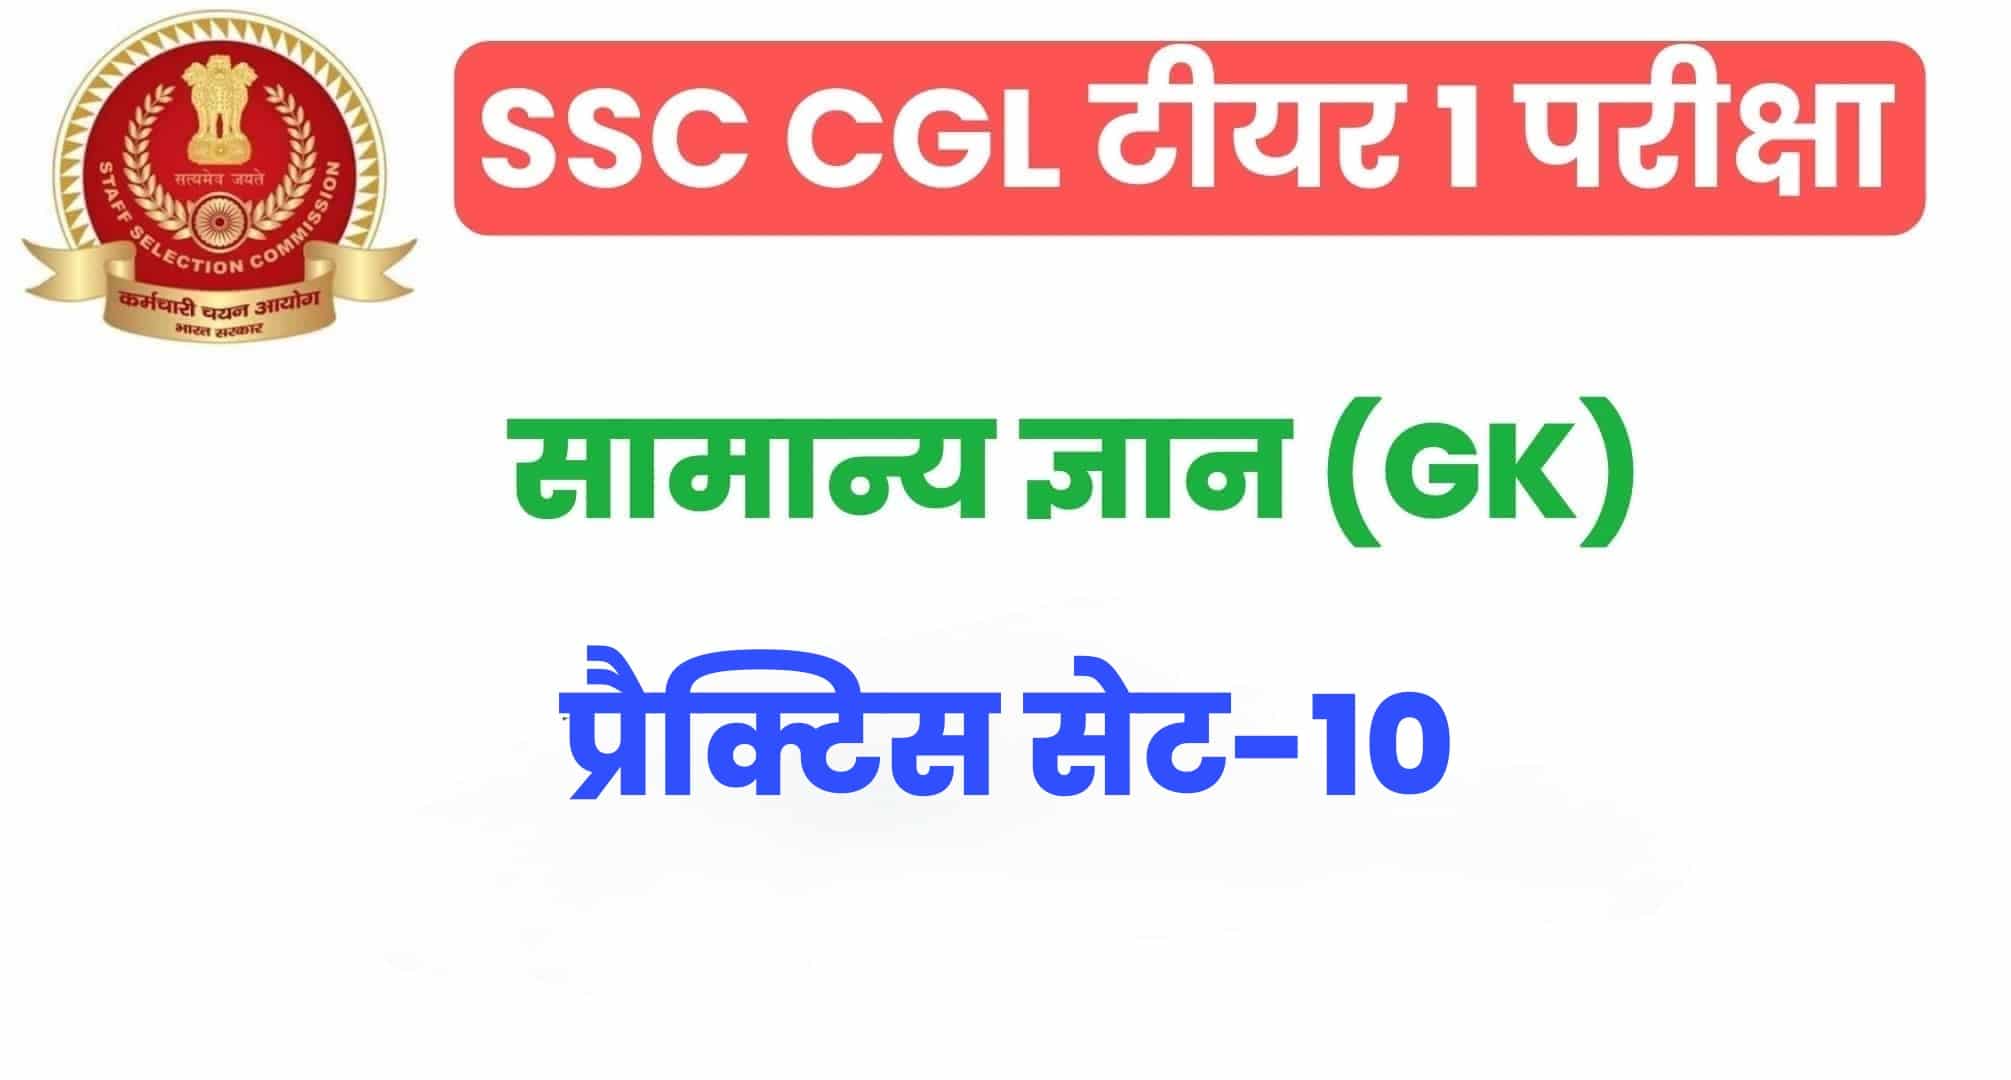 SSC CGL GK/GS प्रैक्टिस सेट 10 :  सामान्य ज्ञान के 25 अतिमहत्वपूर्ण प्रश्न, परीक्षा से पहले जरूर अध्ययन करें